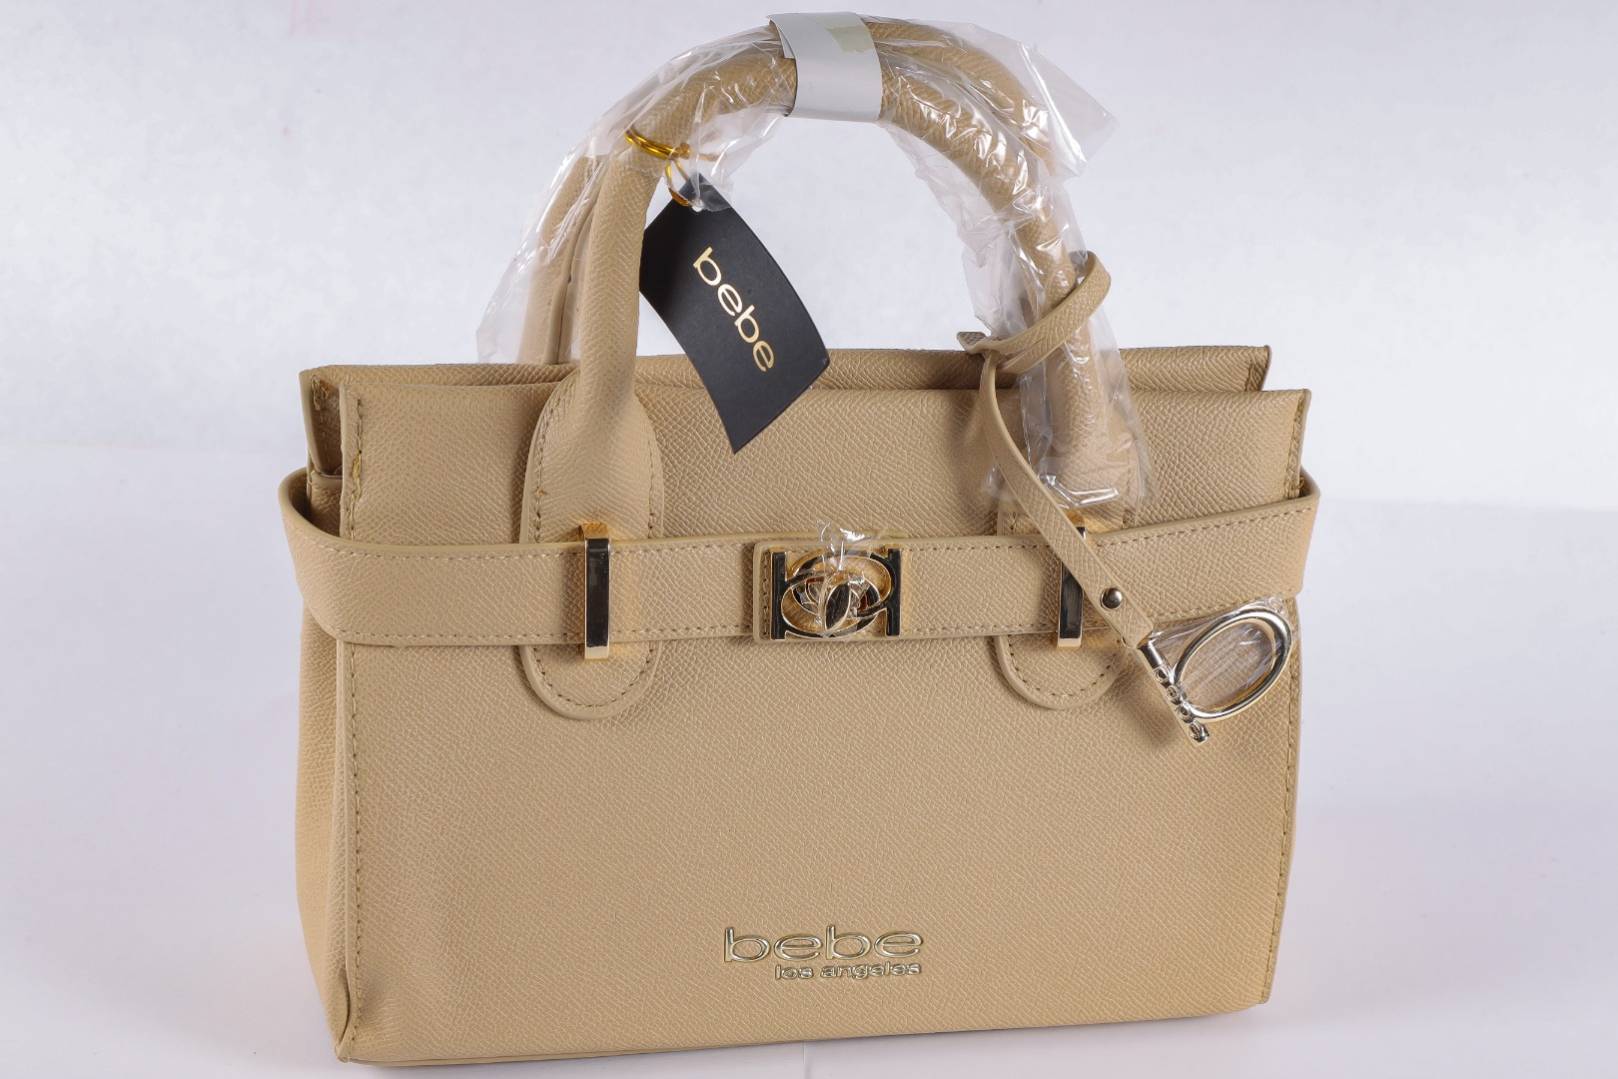 Tía egipcio Júnior Via Trading | Assorted Bebe New Overstock Handbags Loads